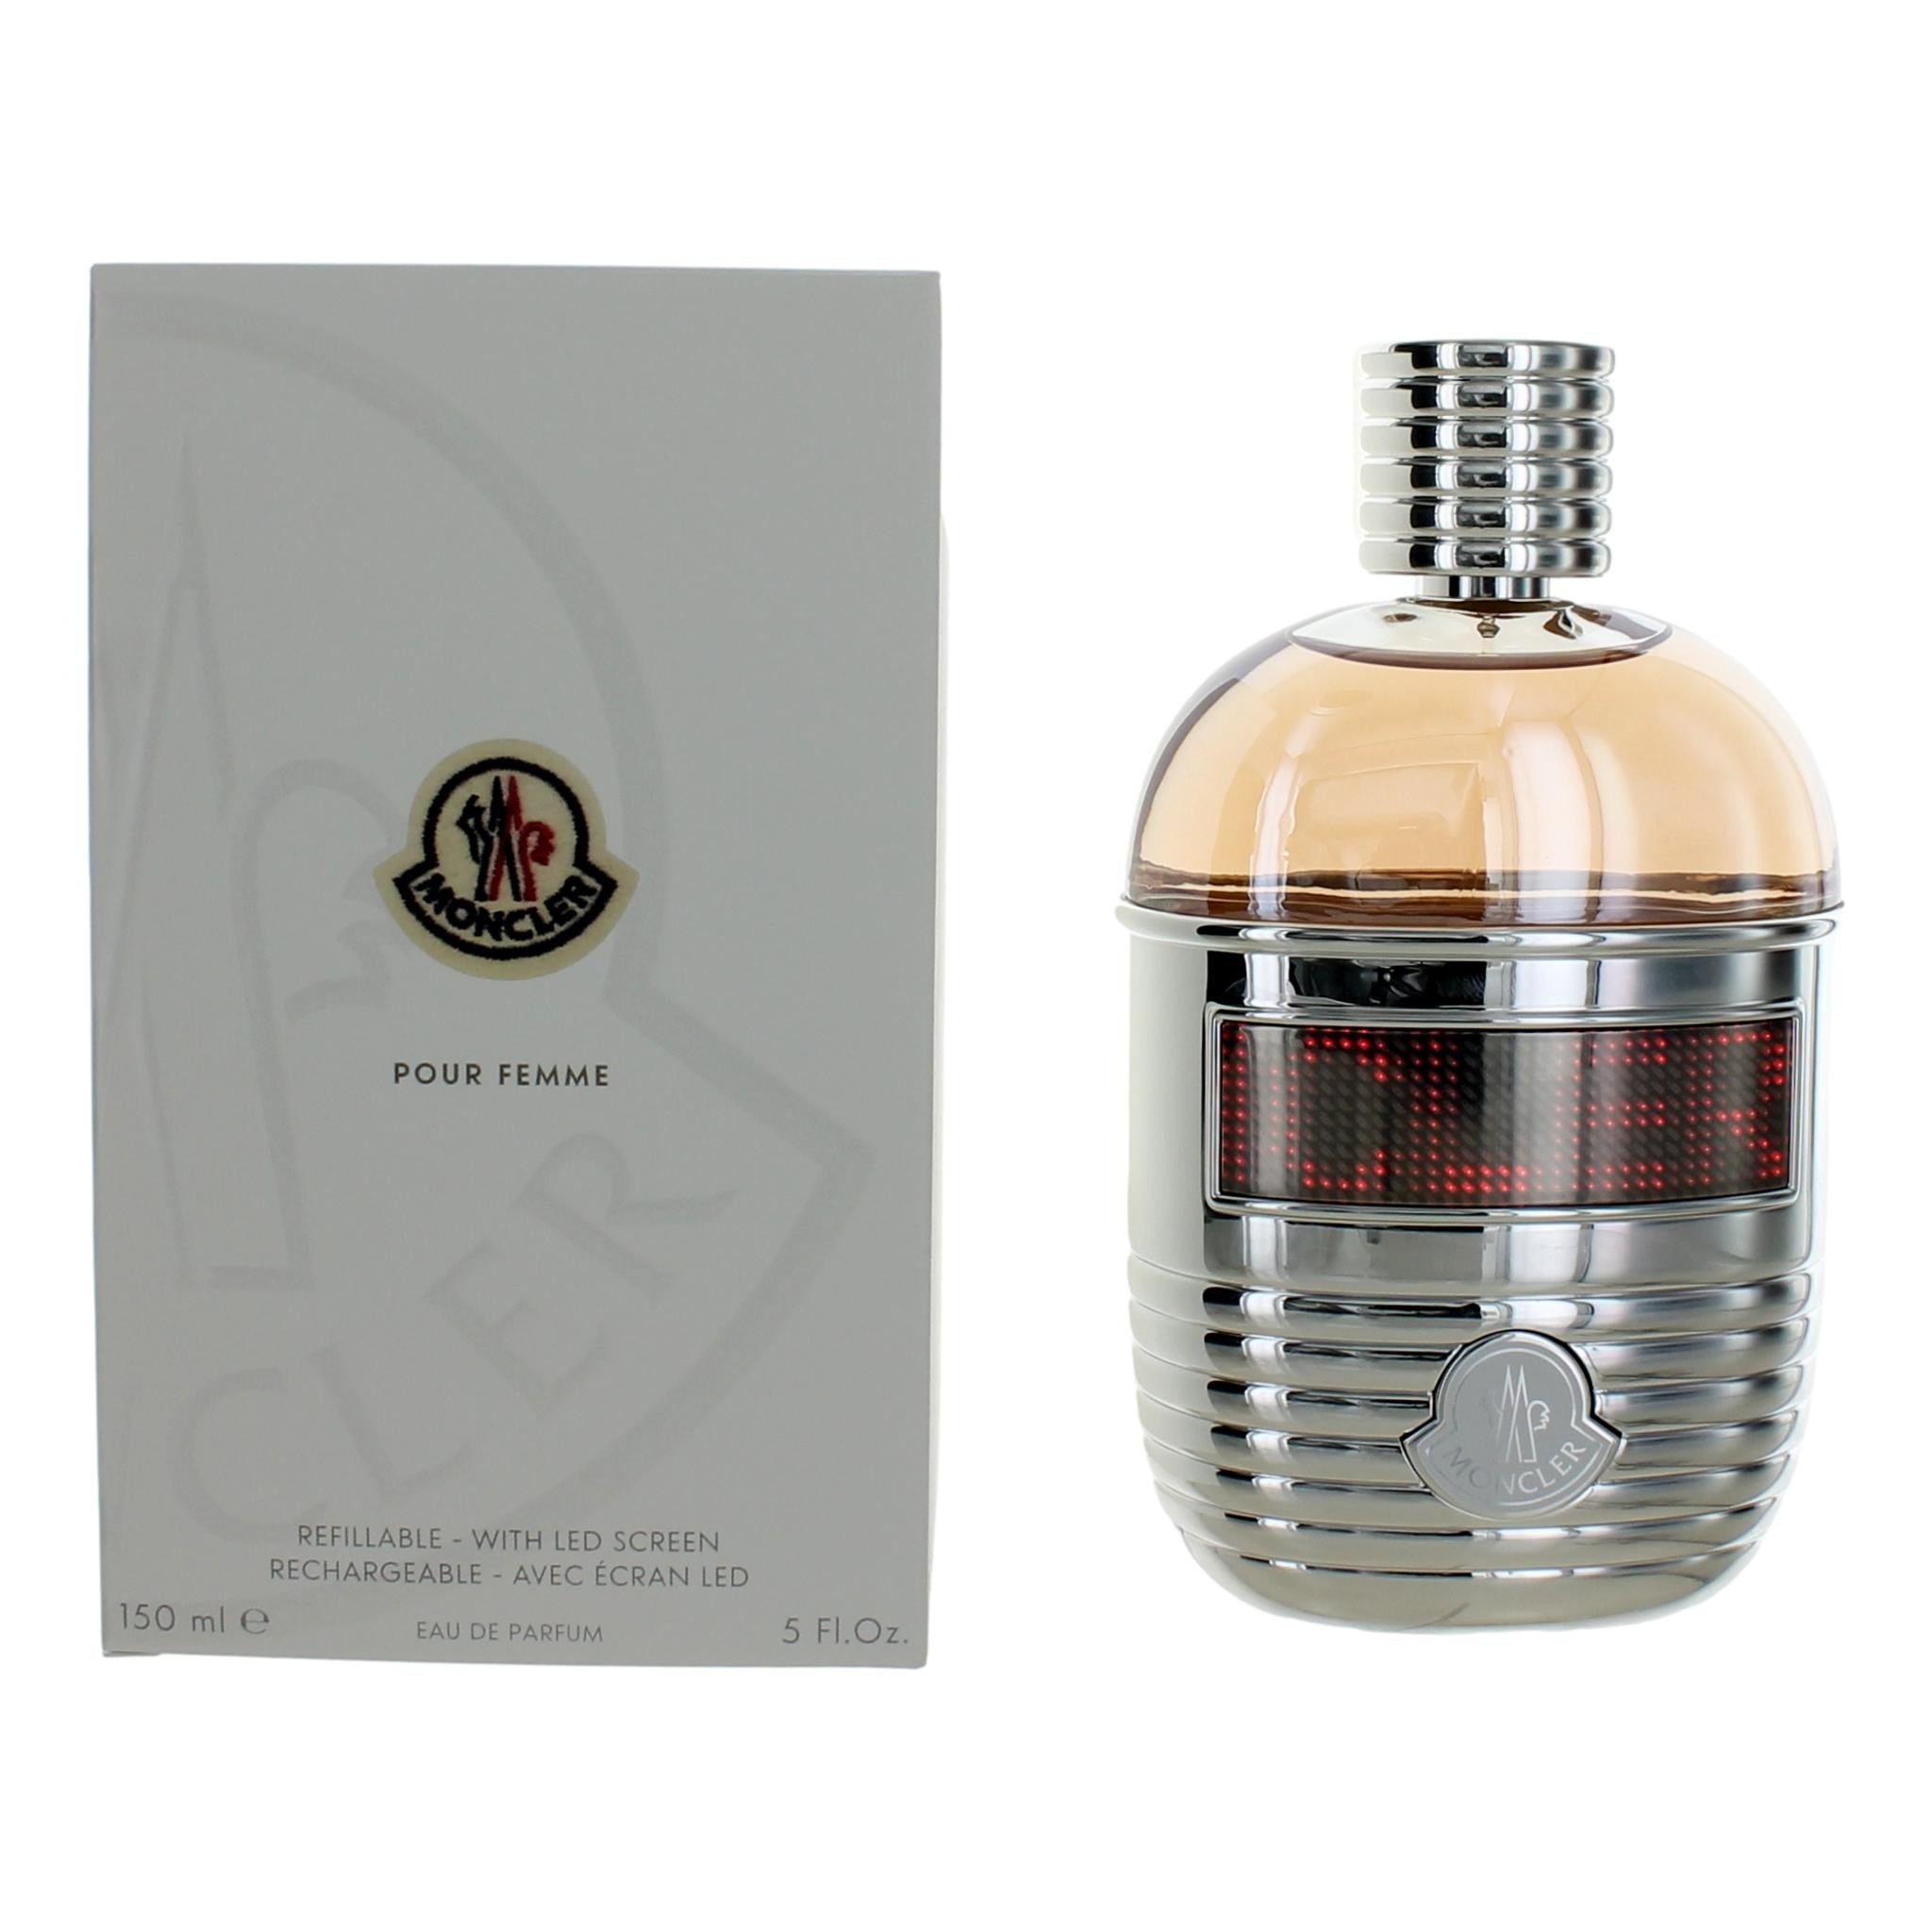 Bottle of Moncler Pour Femme by Moncler, 5 oz Refillable Eau De Parfum Spray for Women with LED Screen